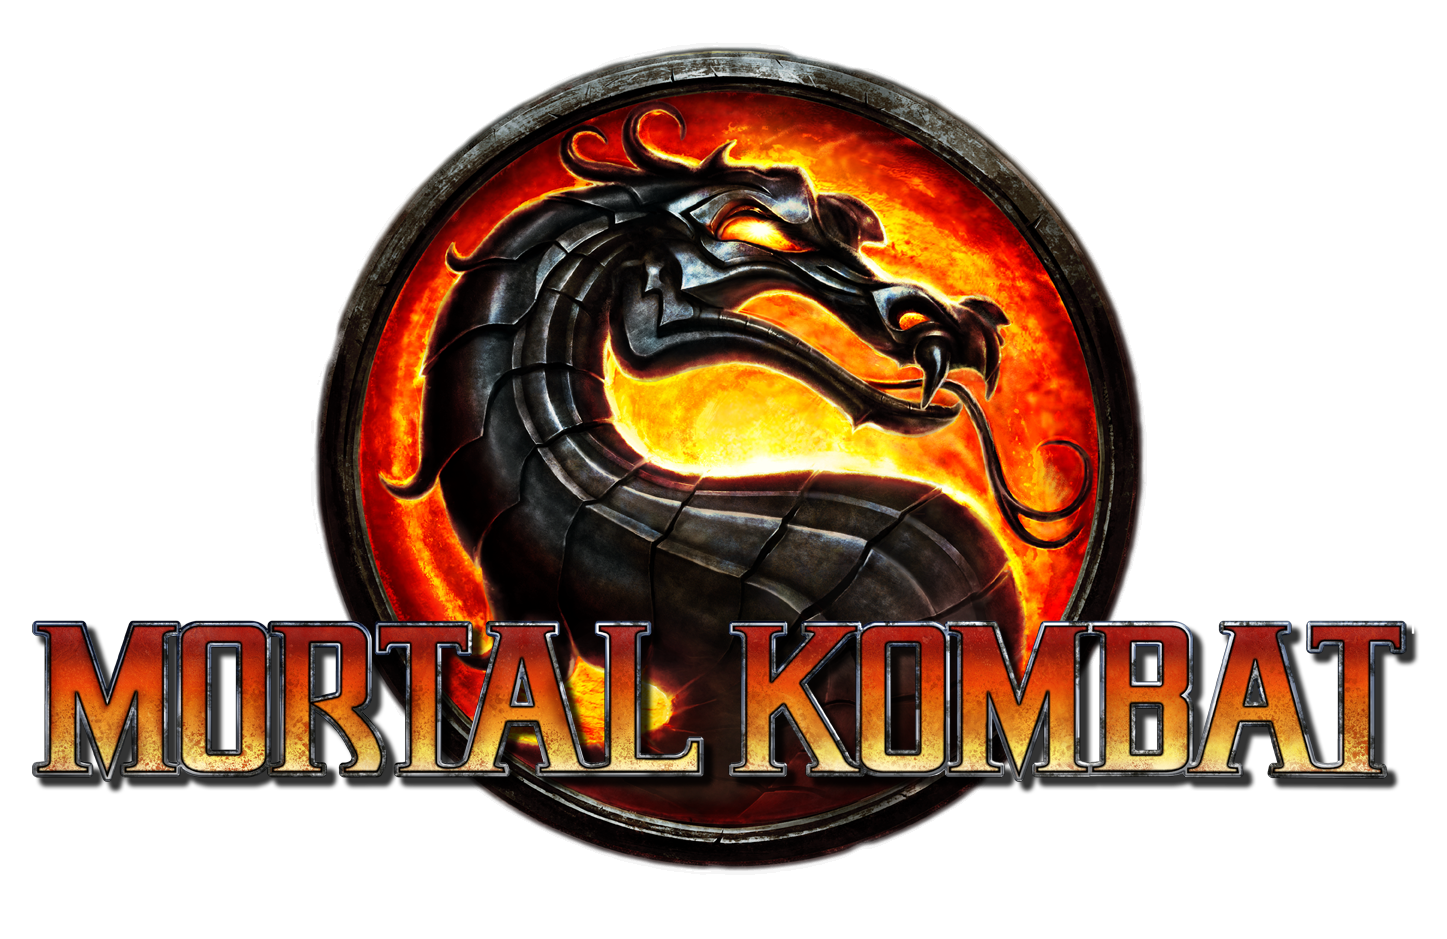 Mortal Kombat Logo PNG Image Background